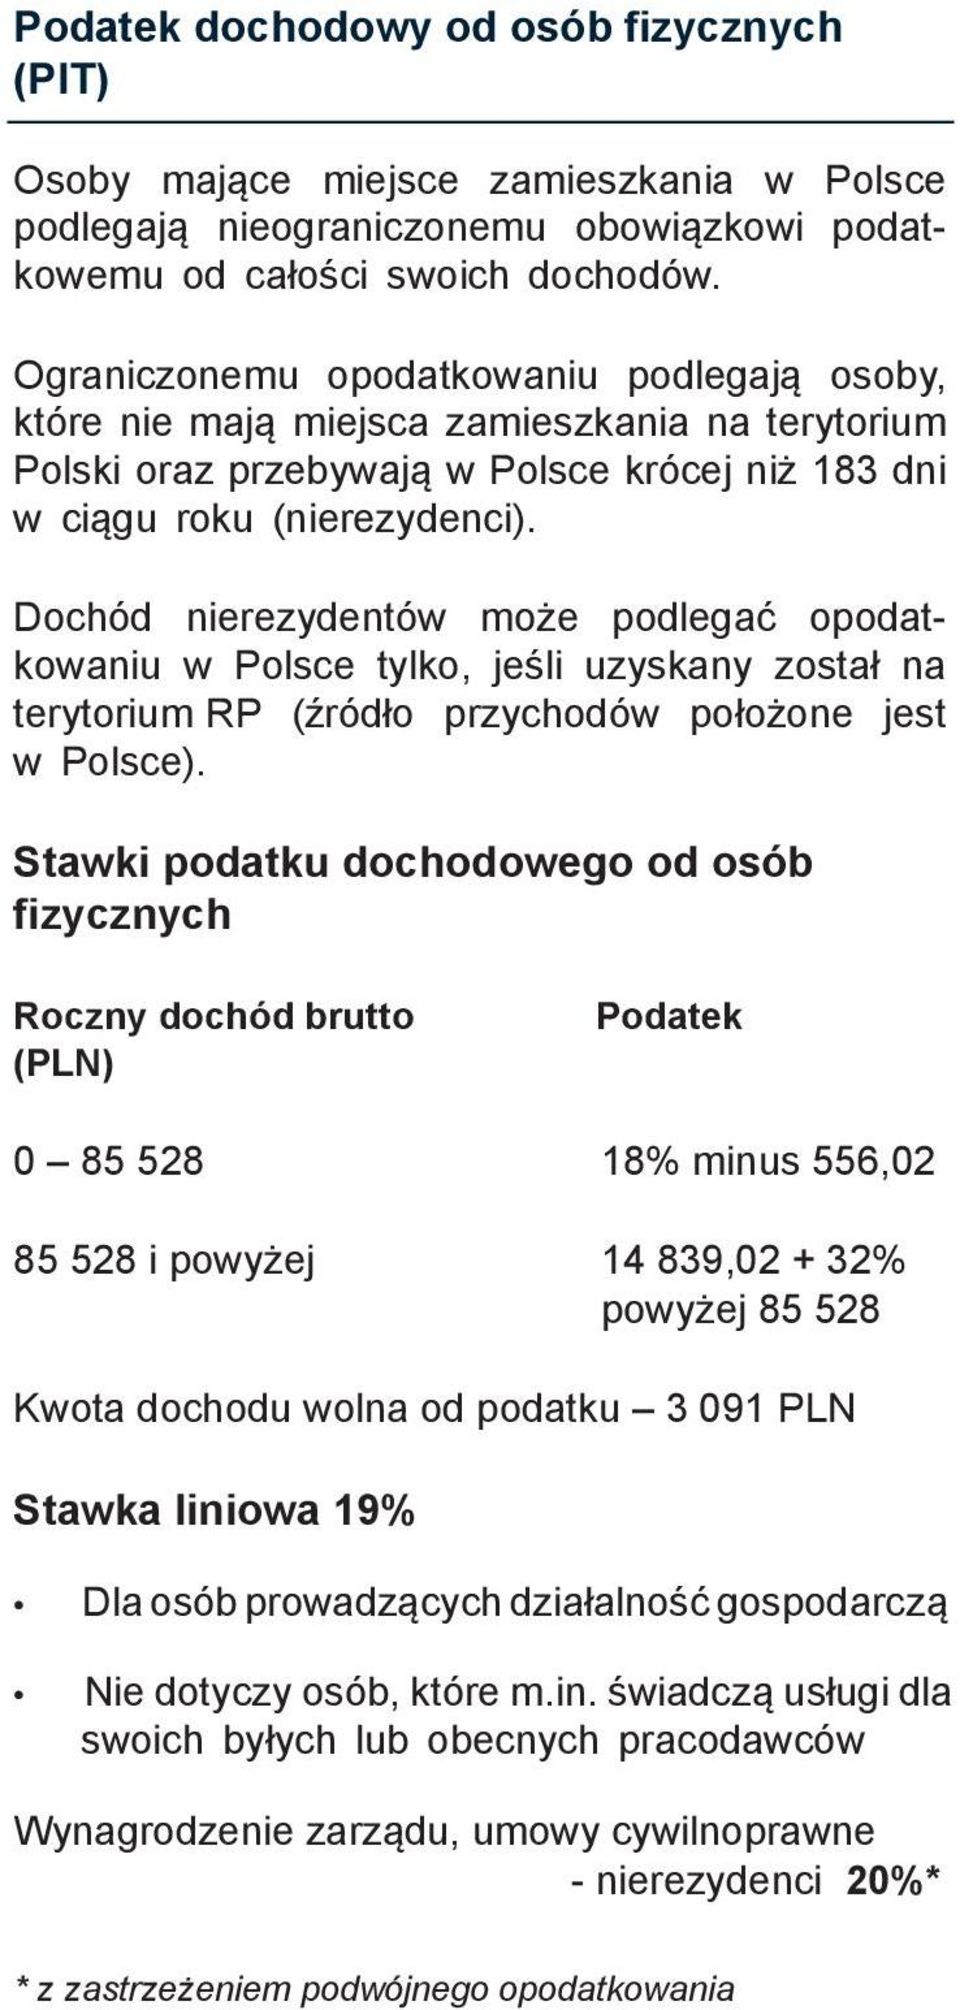 Dochód nierezydentów może podlegać opodatkowaniu w Polsce tylko, jeśli uzyskany został na terytorium RP (źródło przychodów położone jest w Polsce).